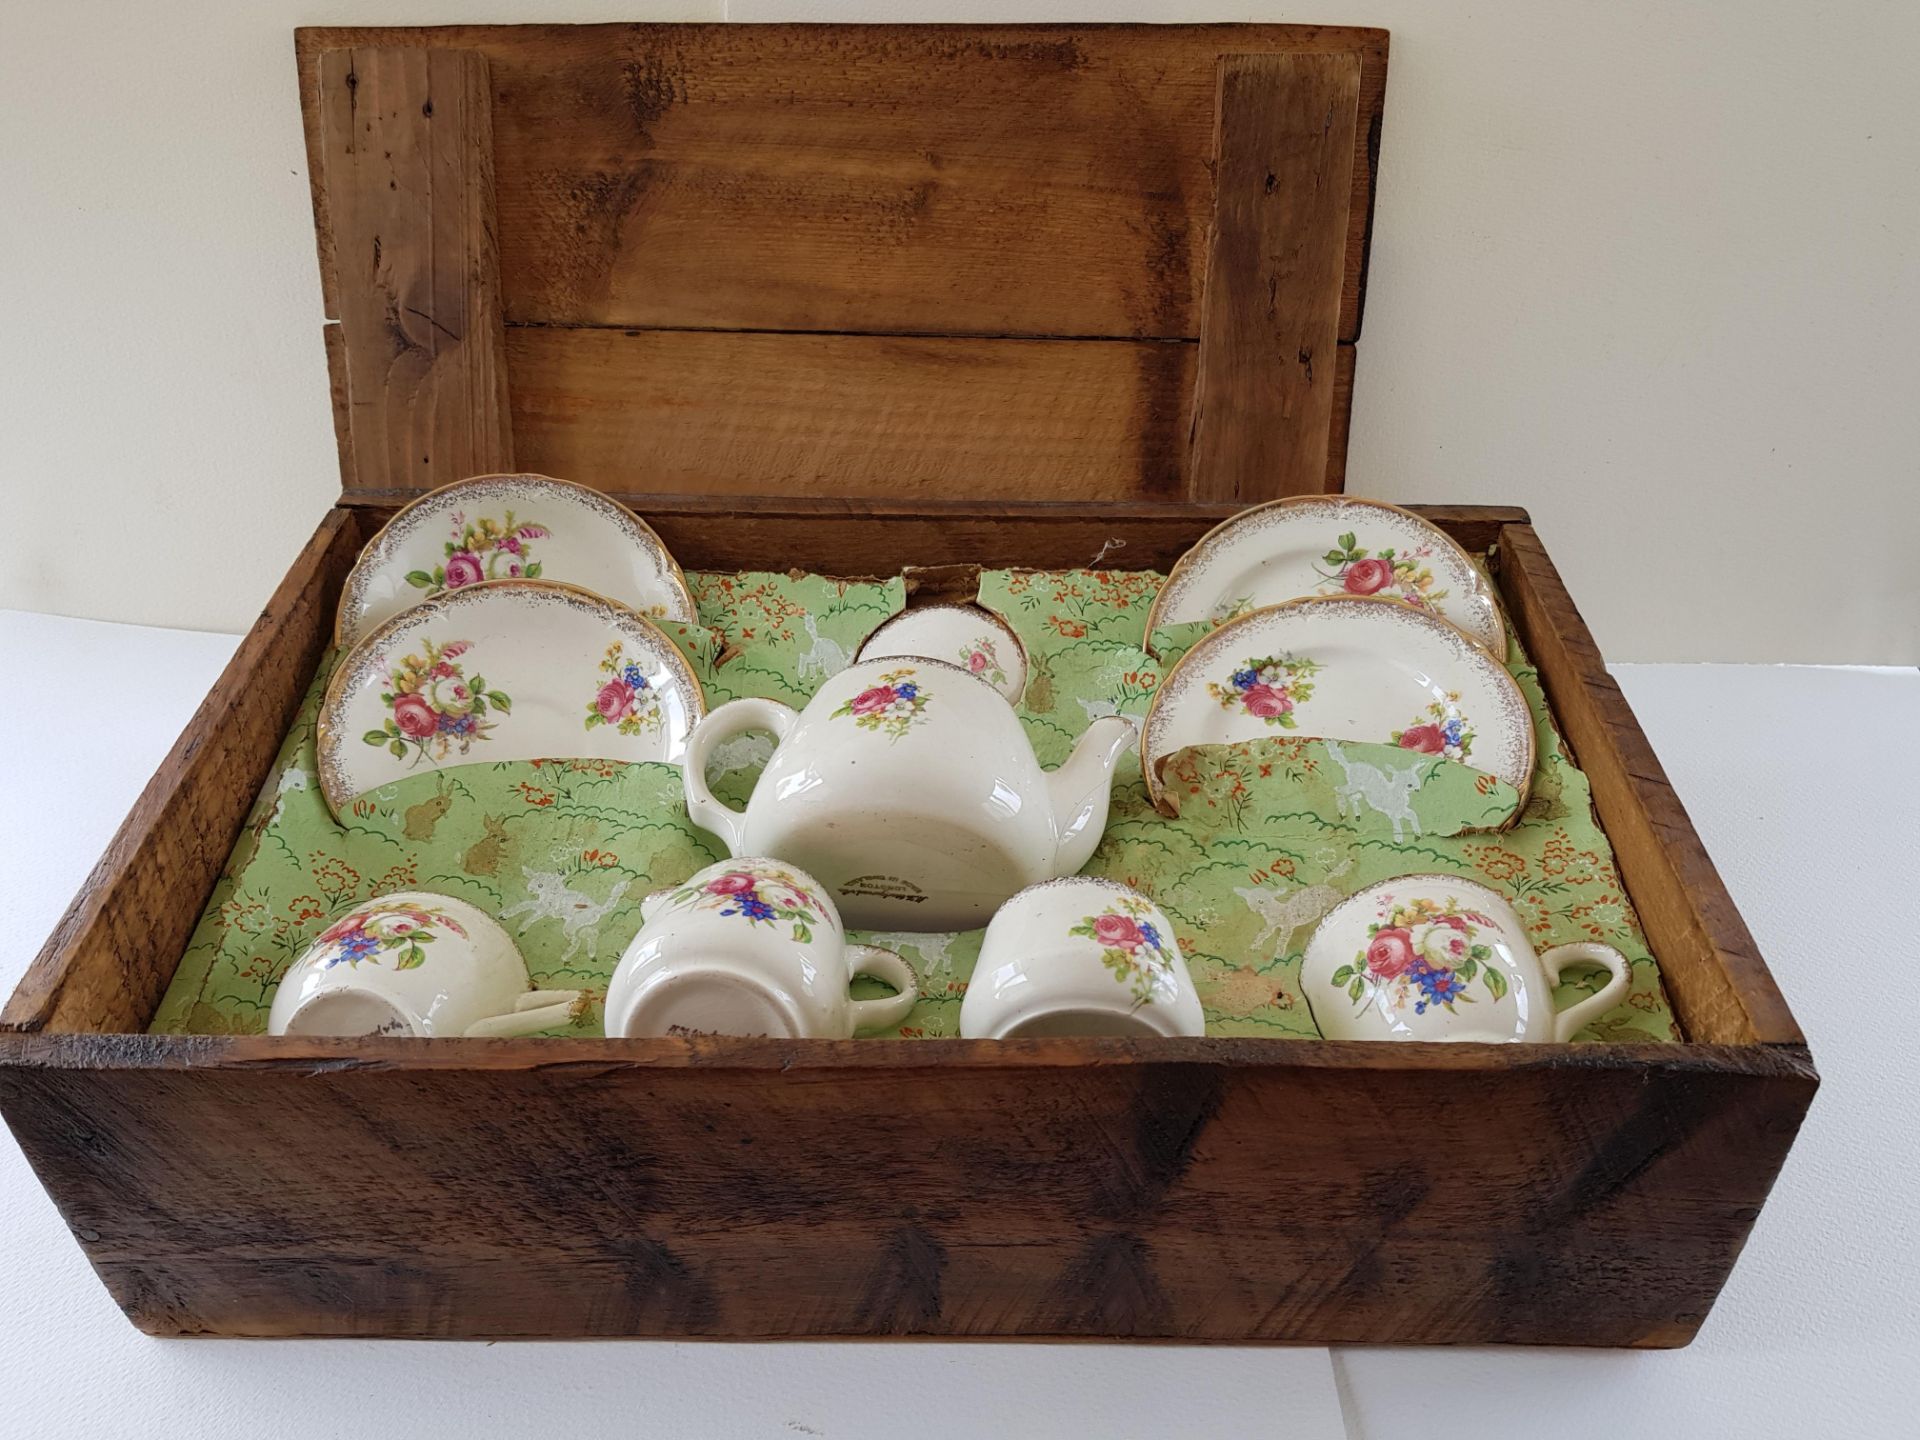 Vintage Wedgewood Childs Tea Set - Image 2 of 4